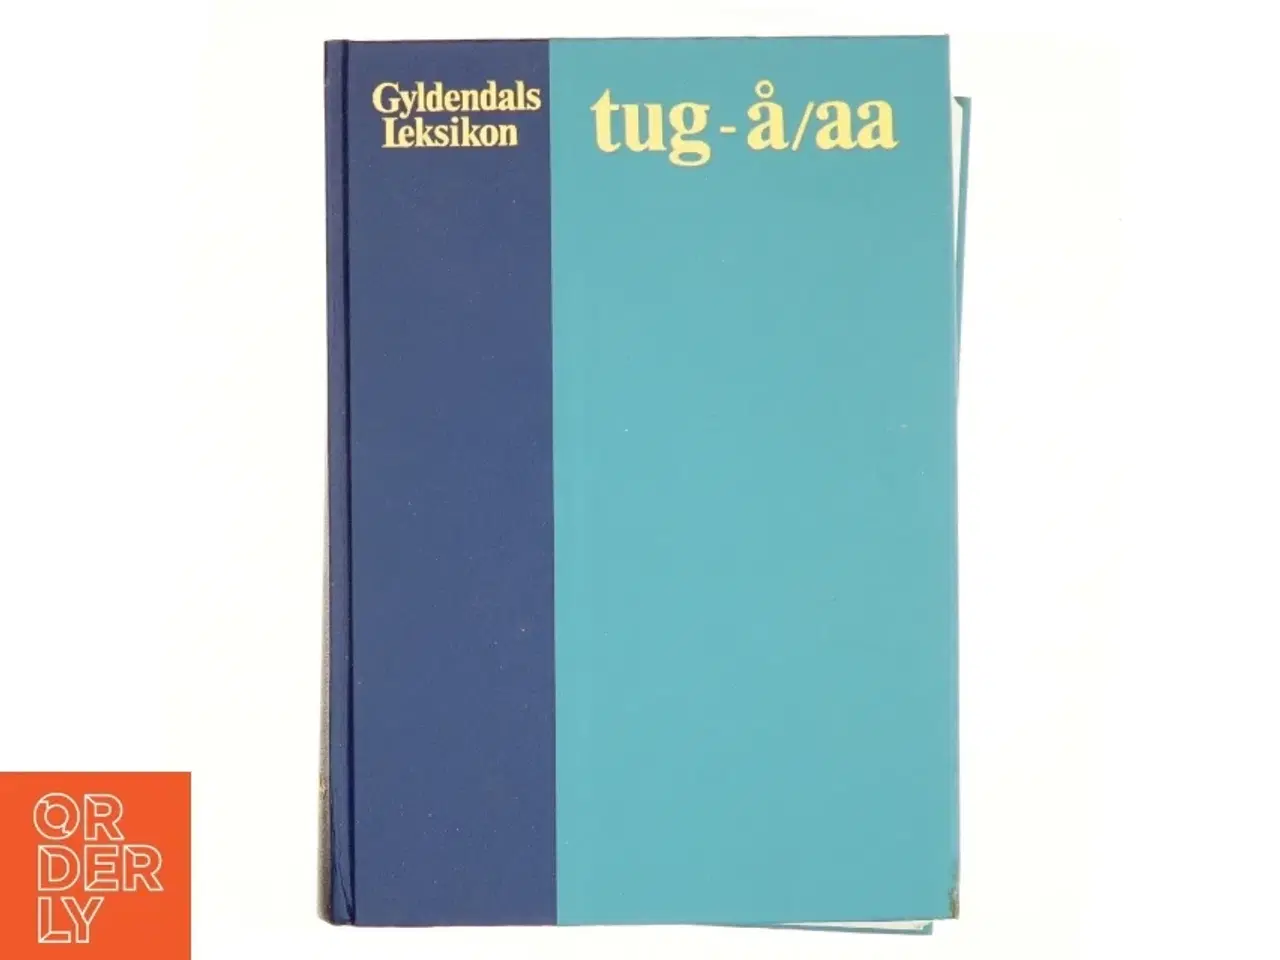 Billede 1 - Gyldendals leksikon, tug-å/aa